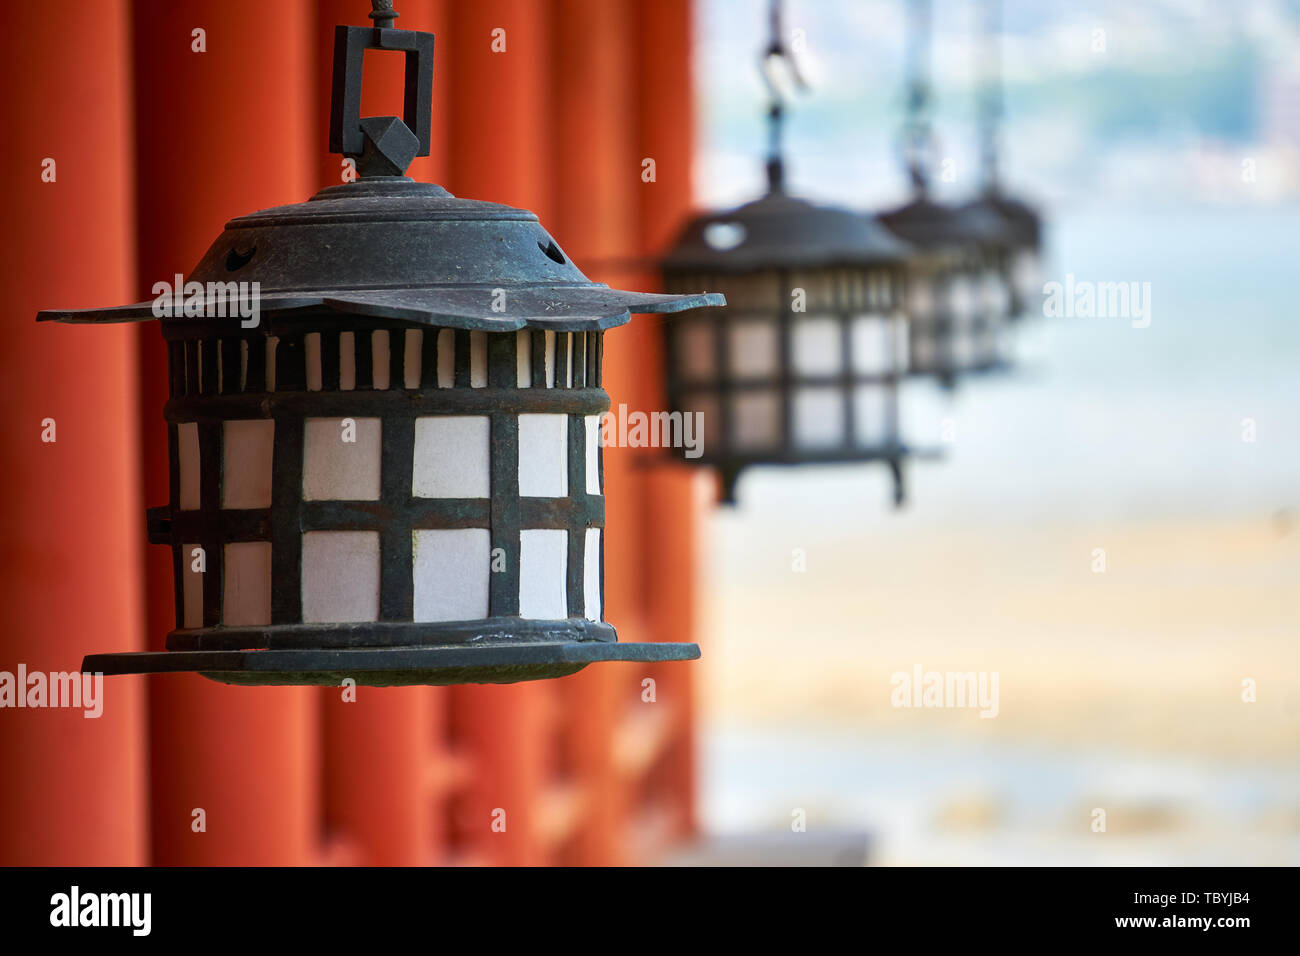 Black and white lanterns hang in a row by vermilion columns at Itsukushima Jinja Shrine at Miyajima, Japan, with the Seto Inland Sea behind. Stock Photo